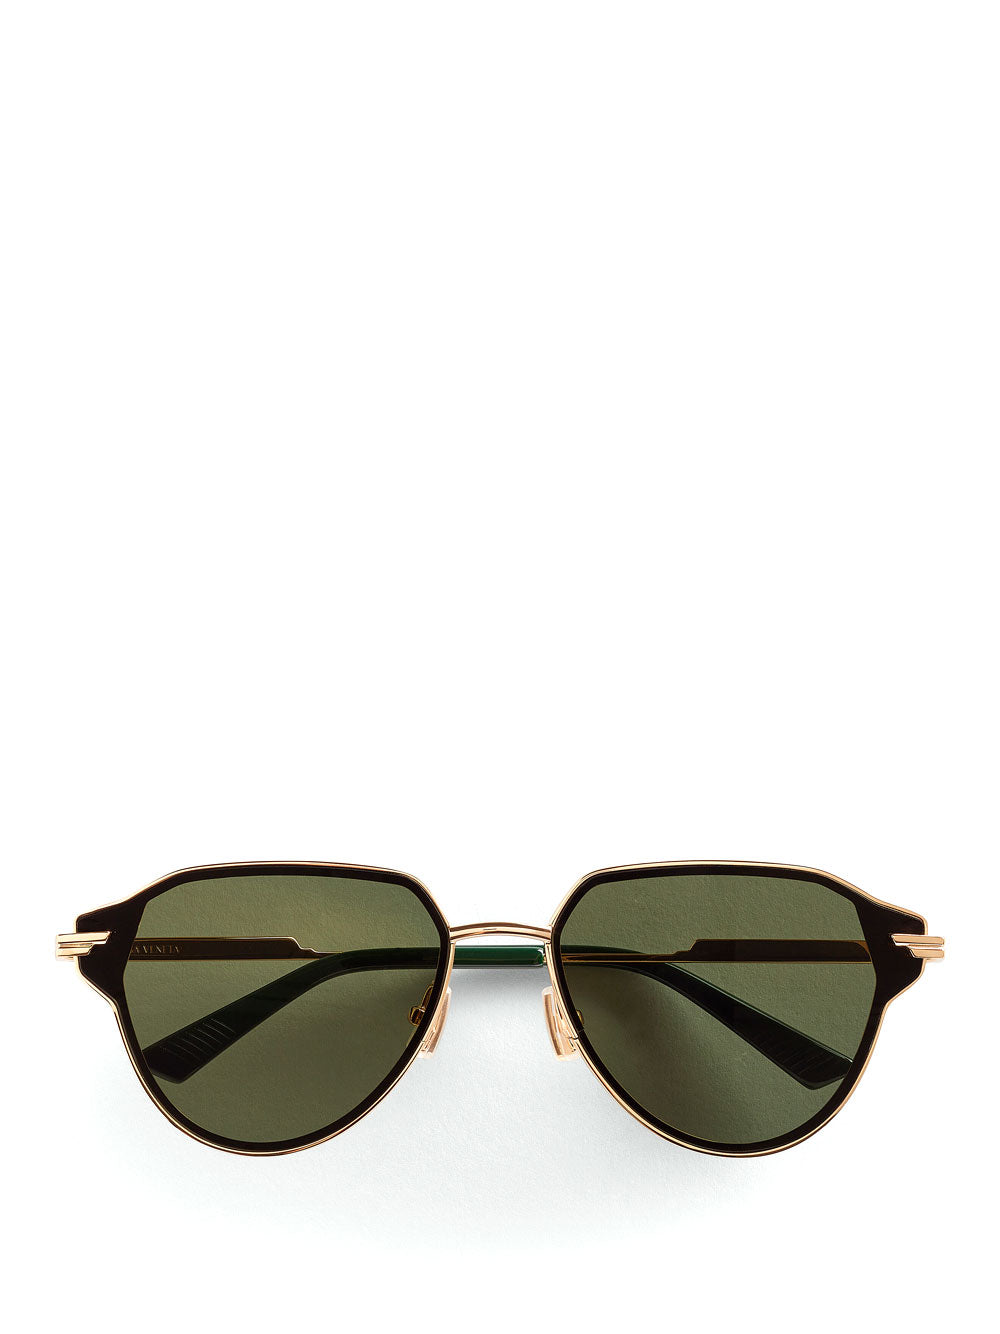 Glaze metal aviator sunglasses